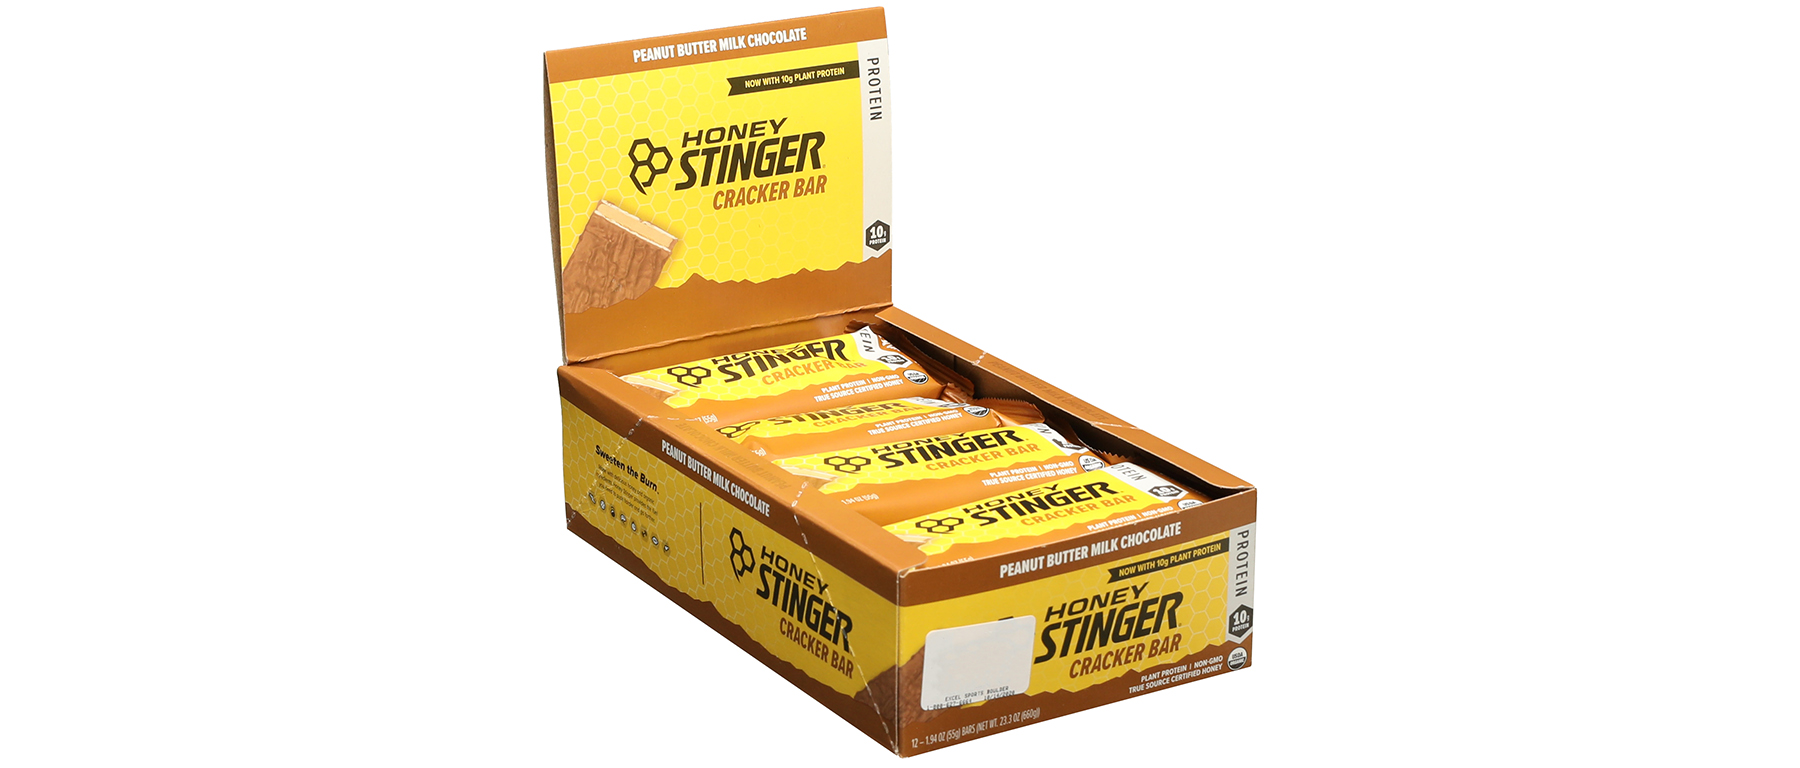 Honey Stinger Cracker Bar